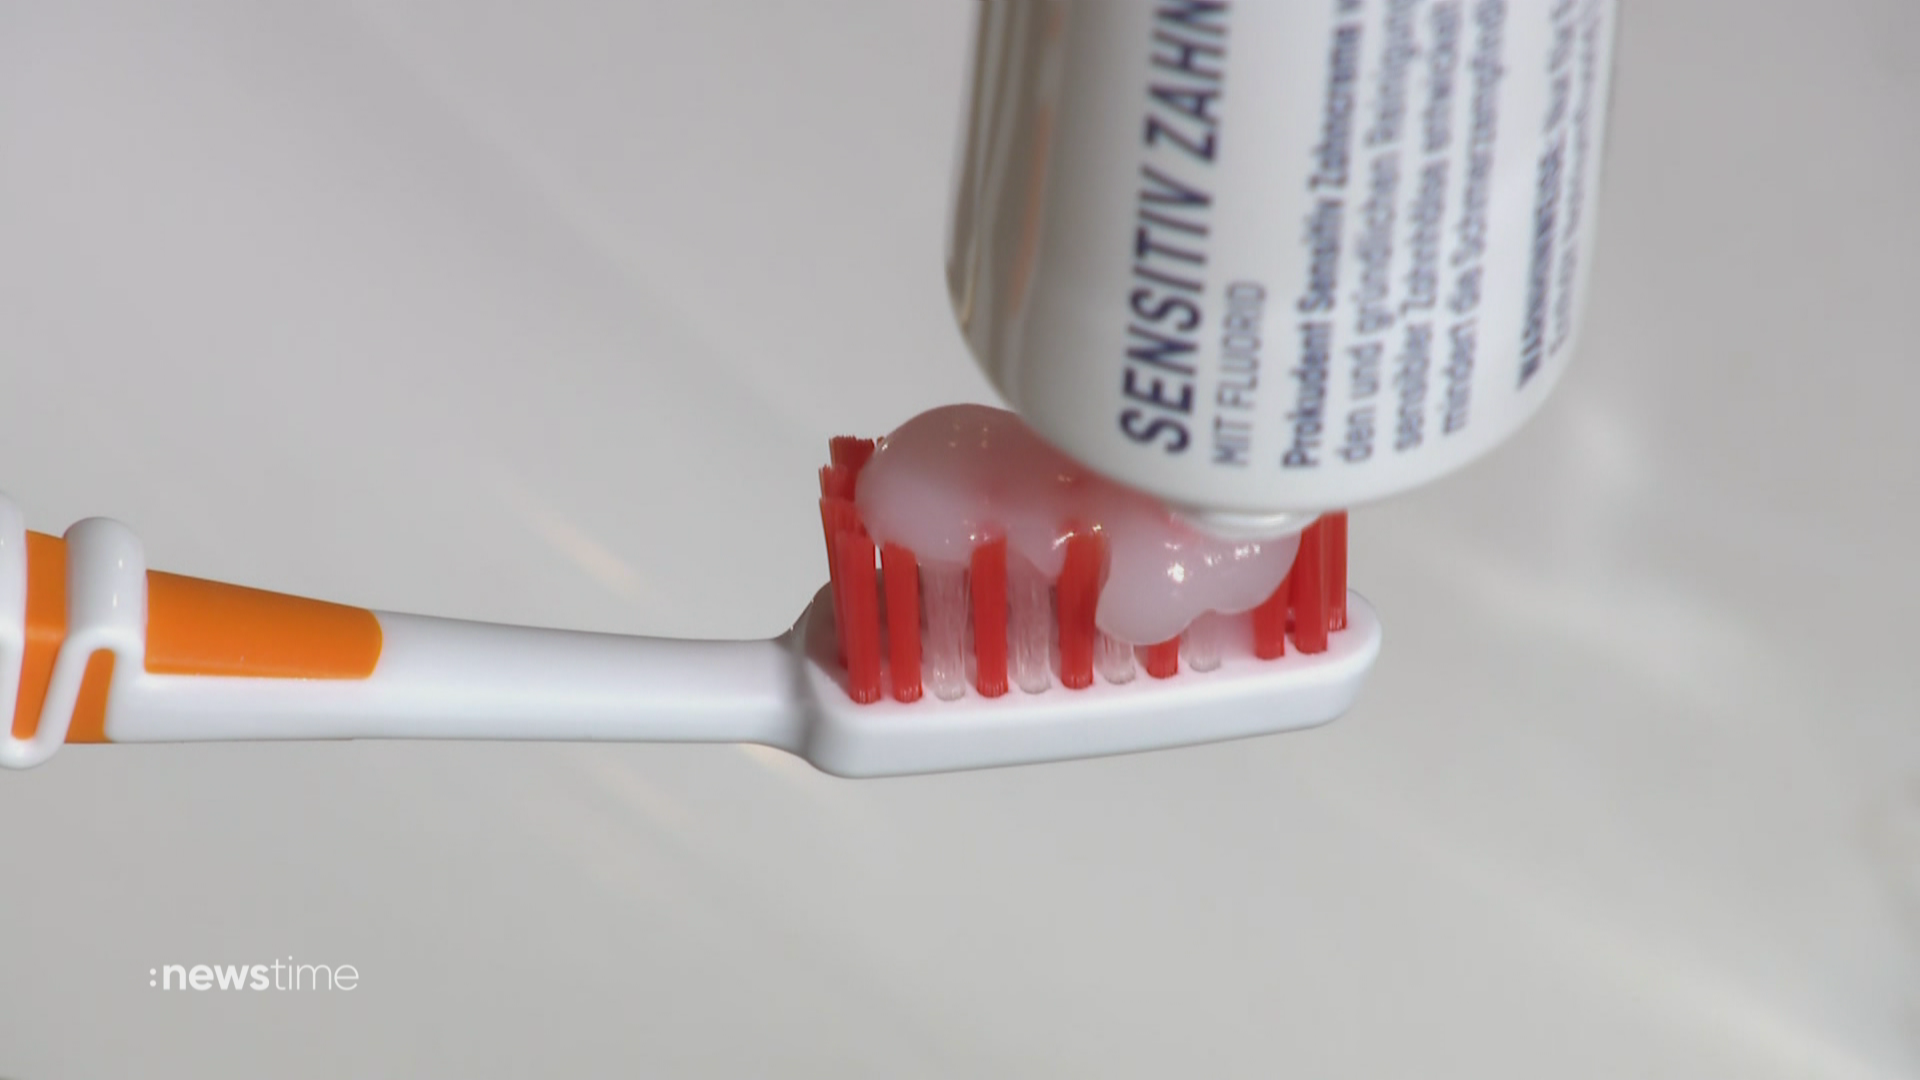 Stiftung Warentest prüft Sensitiv-Zahncremes: Das sind die wirksamsten Produkte